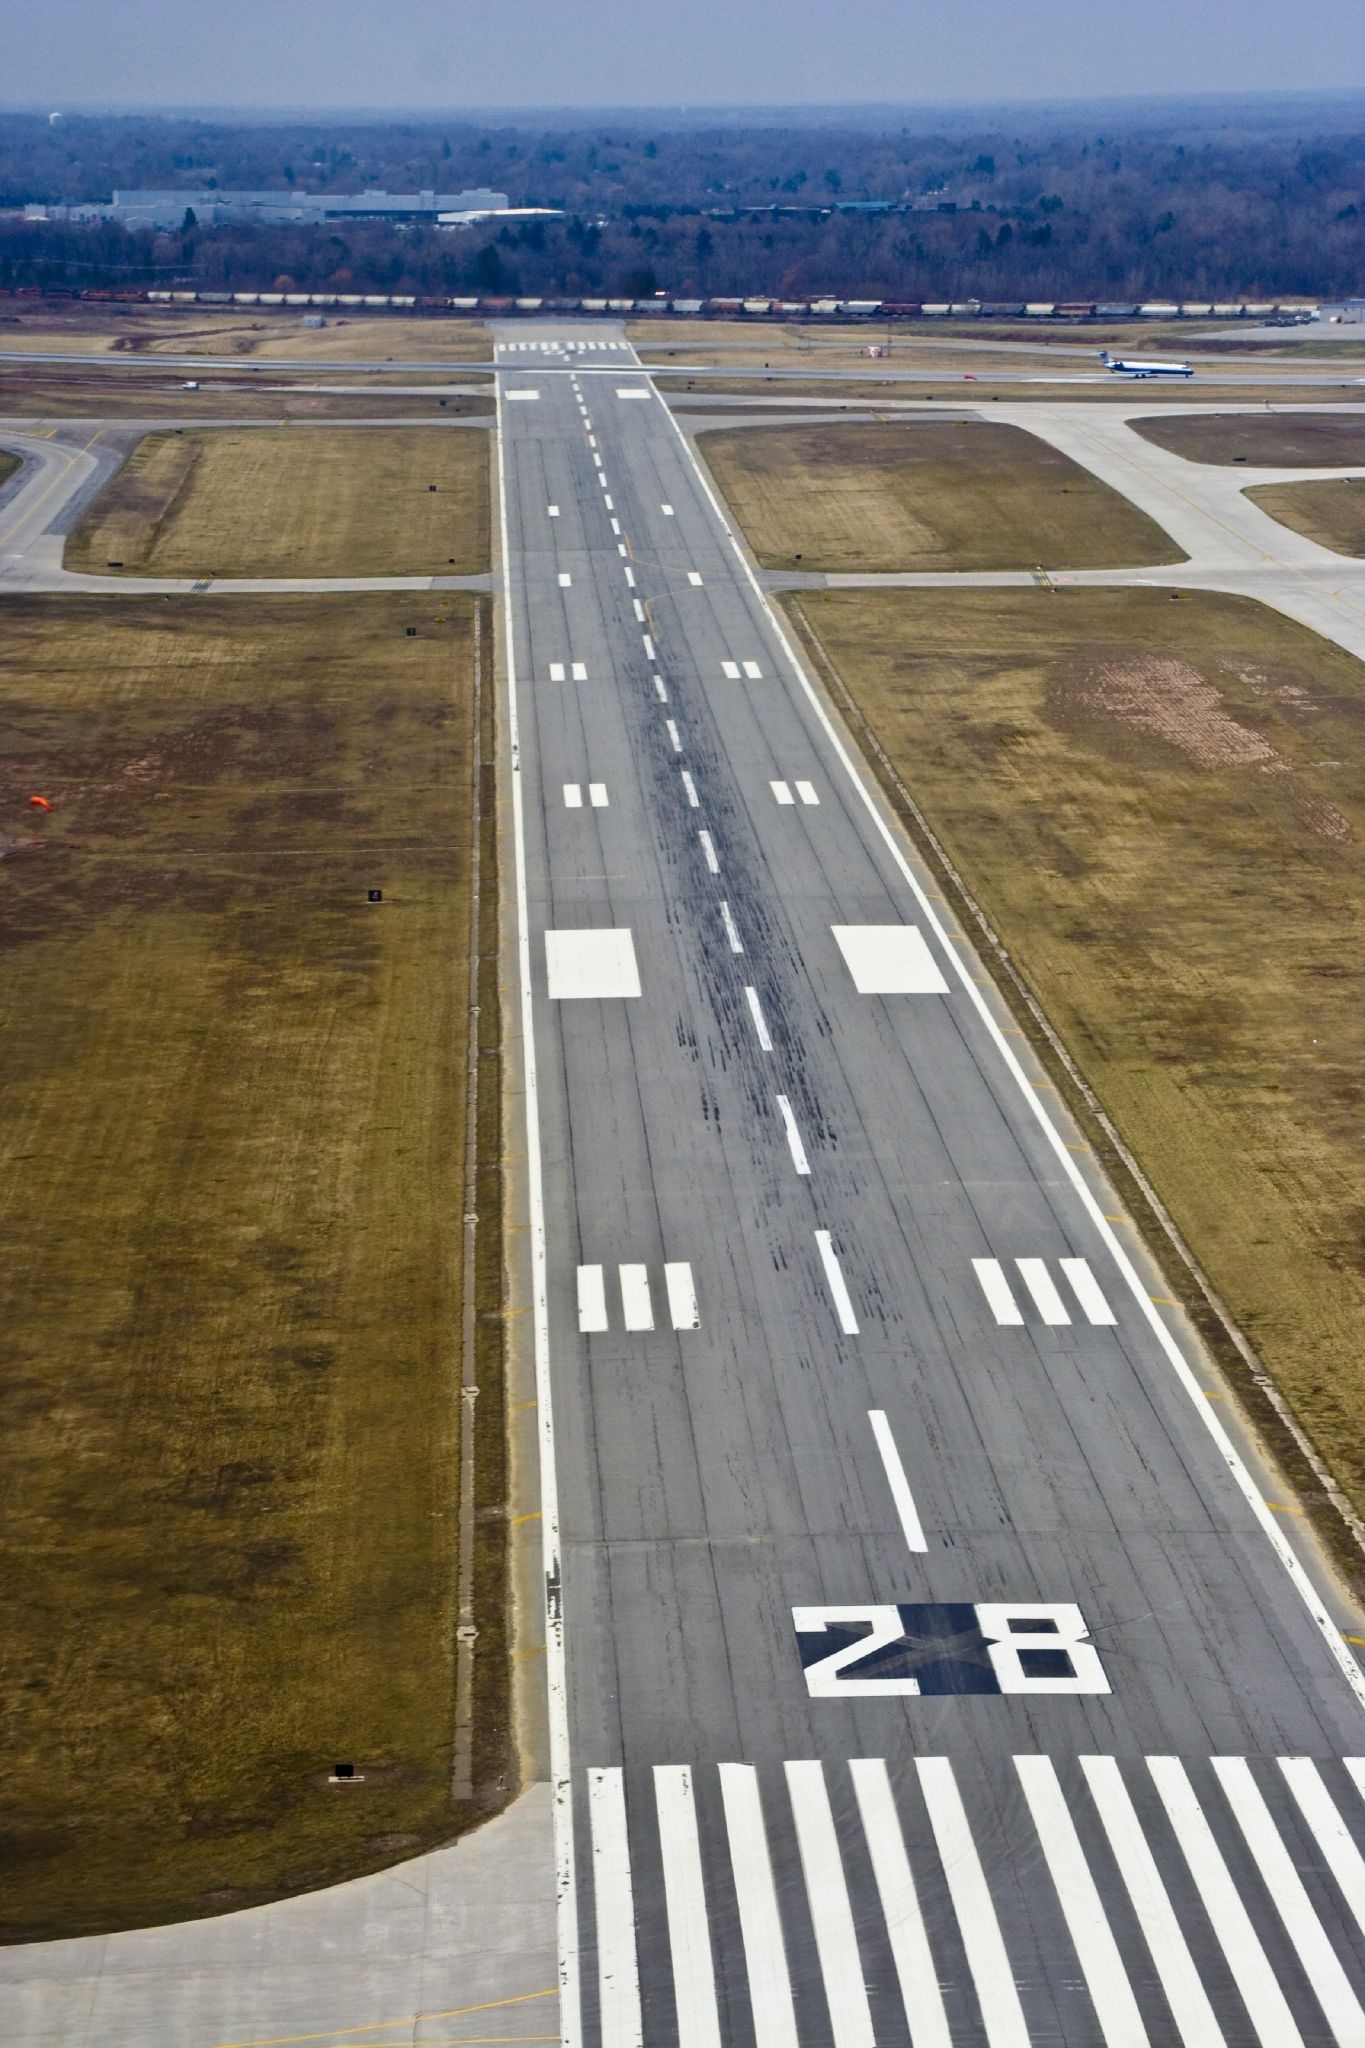 runway numbers